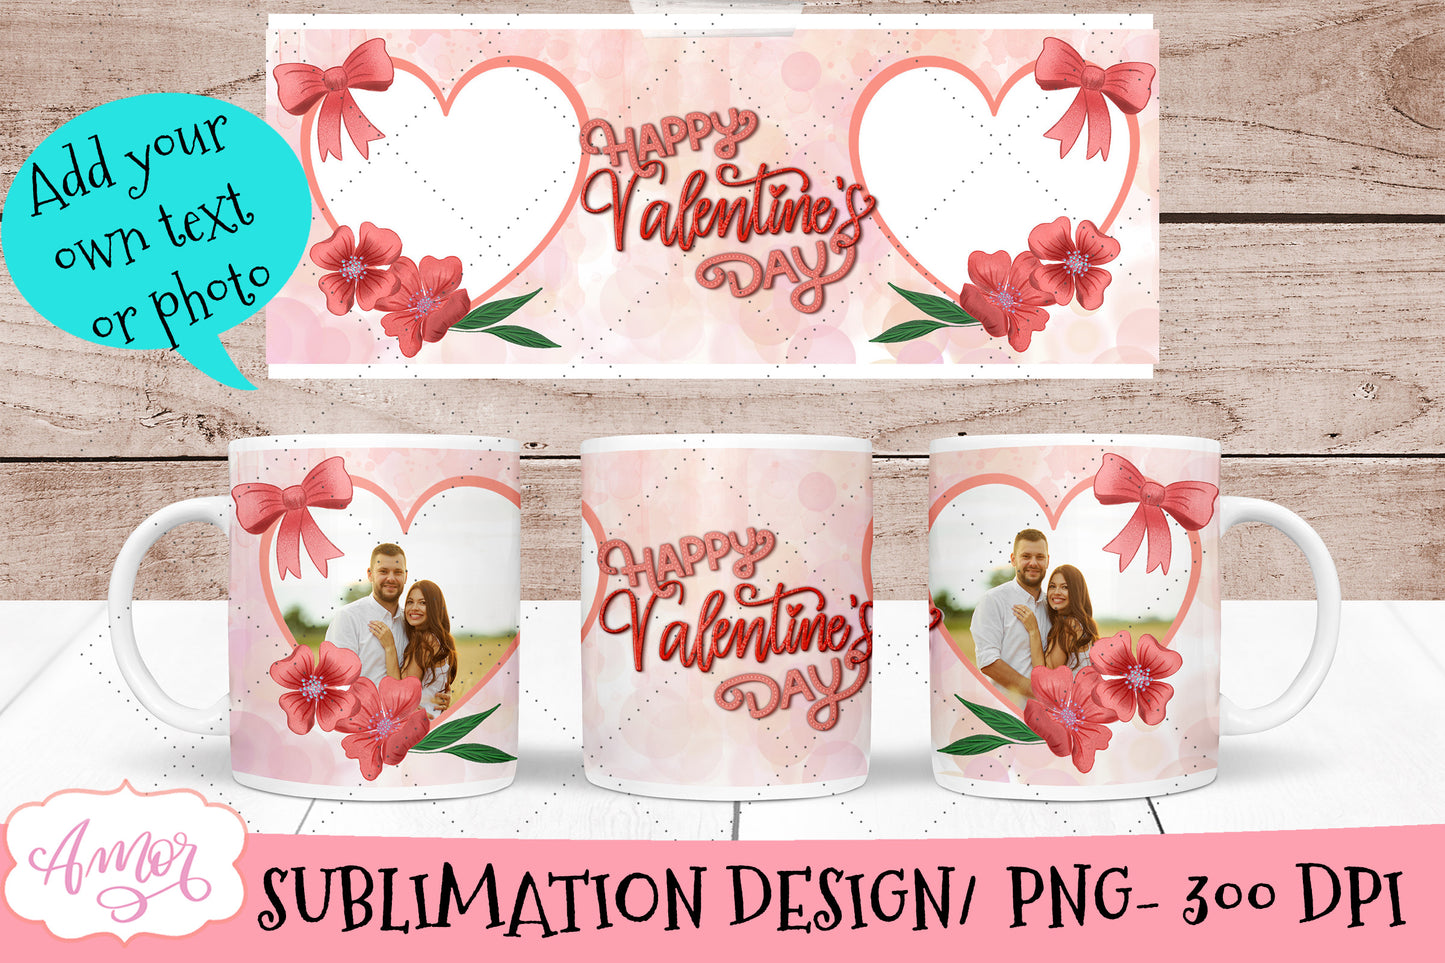 Valentines Photo Mug Wrap for Sublimation Bundle